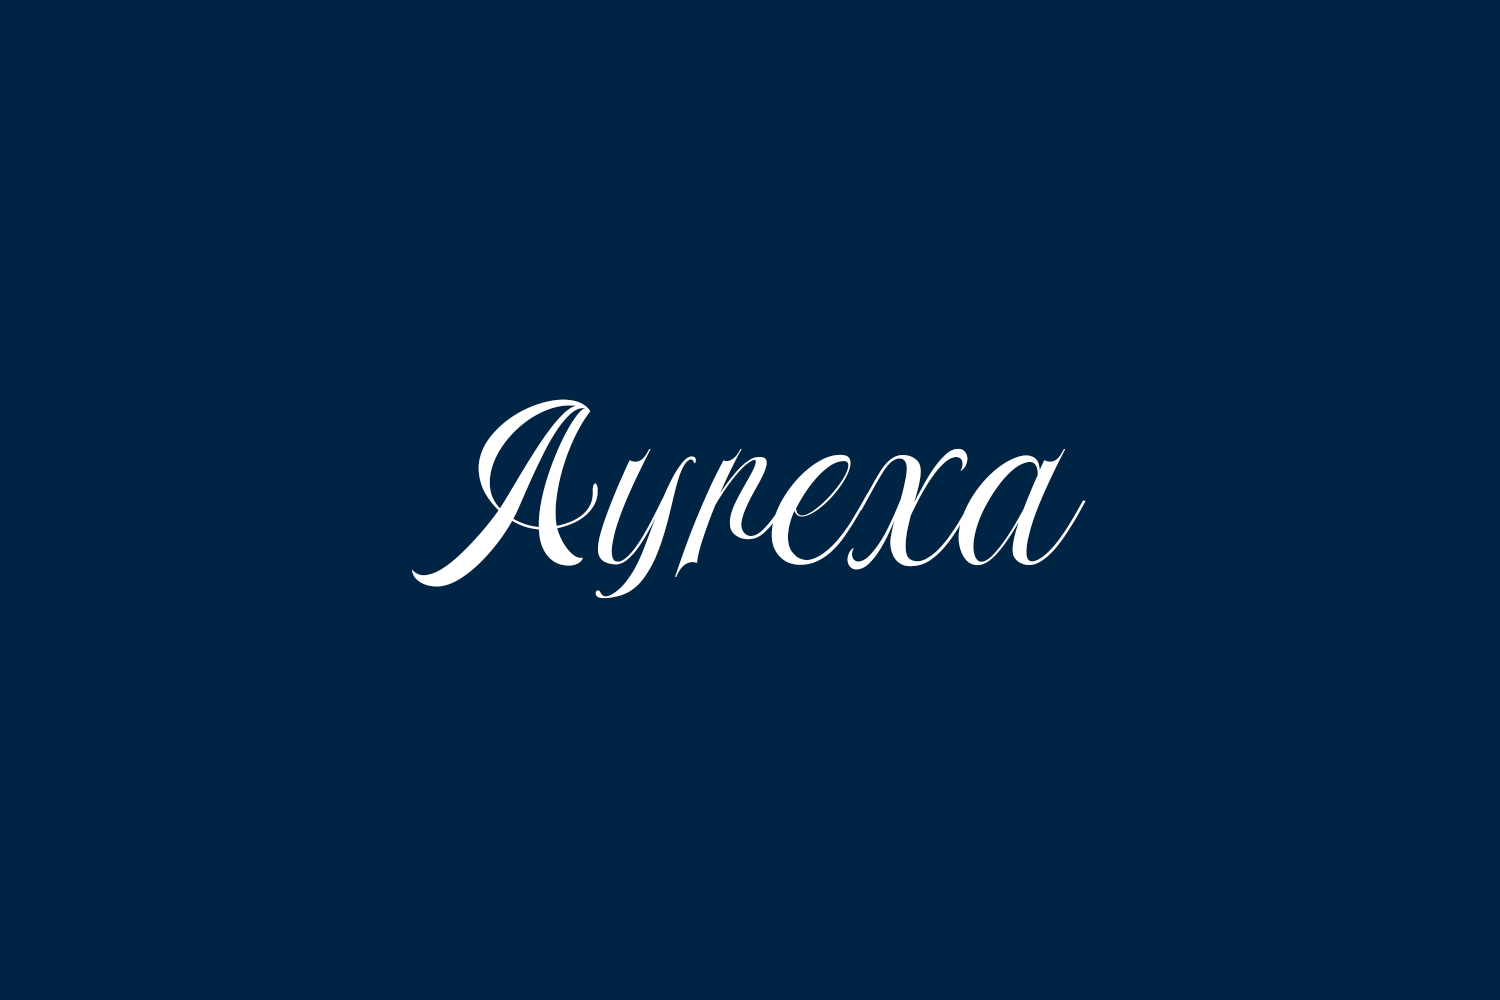 Ayrexa Free Font